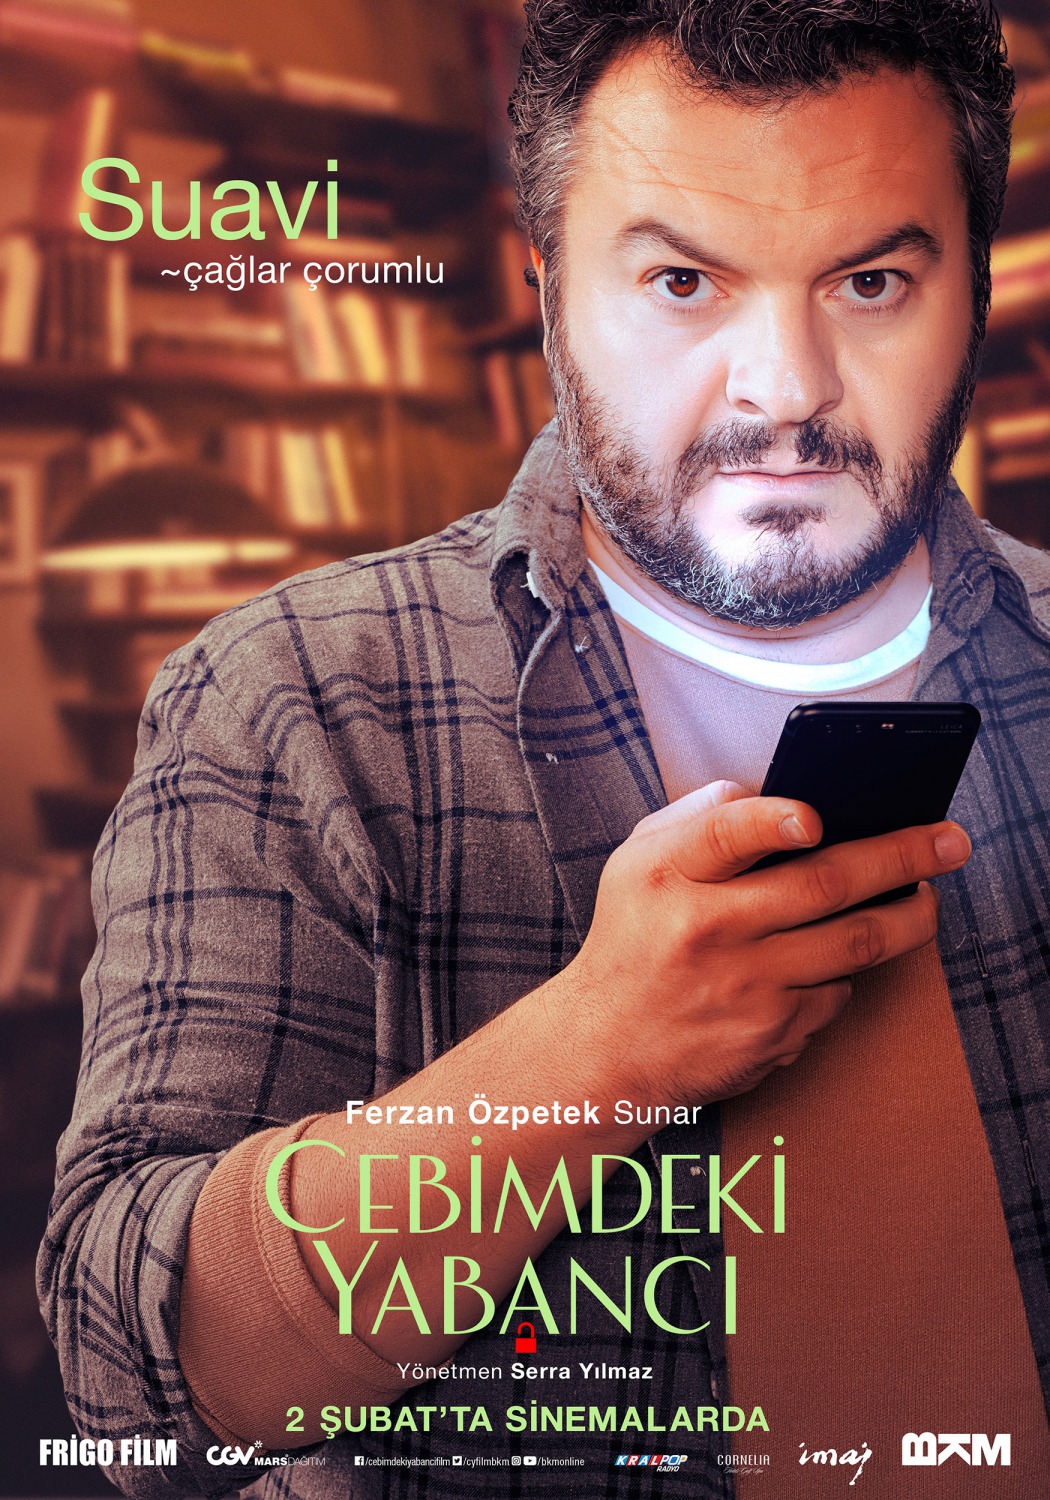 Extra Large Movie Poster Image for Cebimdeki Yabancı (#10 of 10)